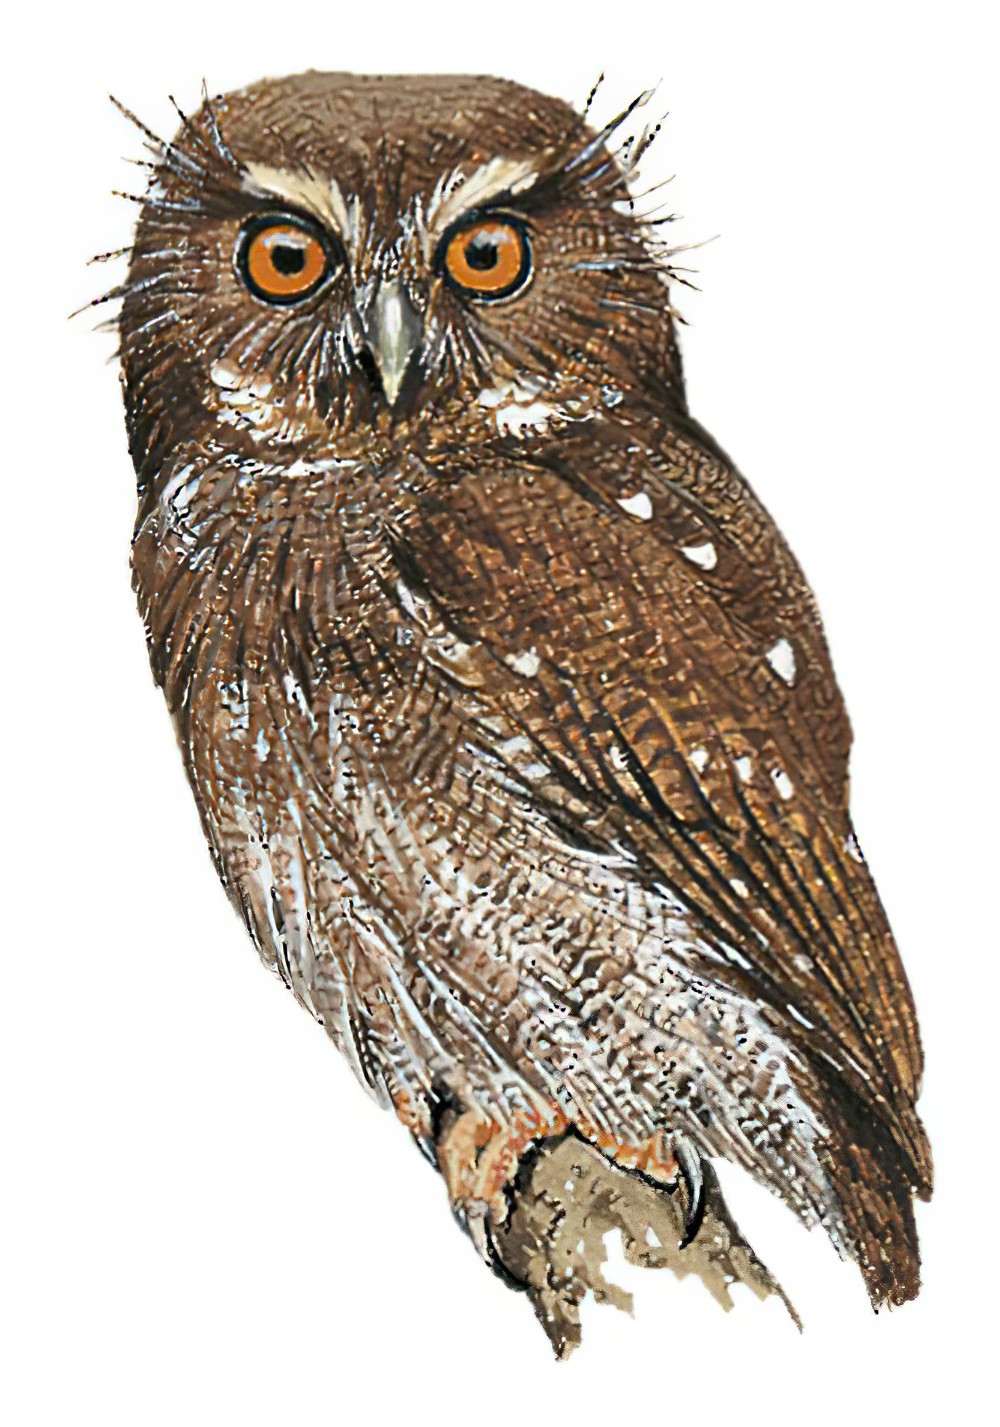 长须鸺鹠 / Long-whiskered Owlet / Xenoglaux loweryi